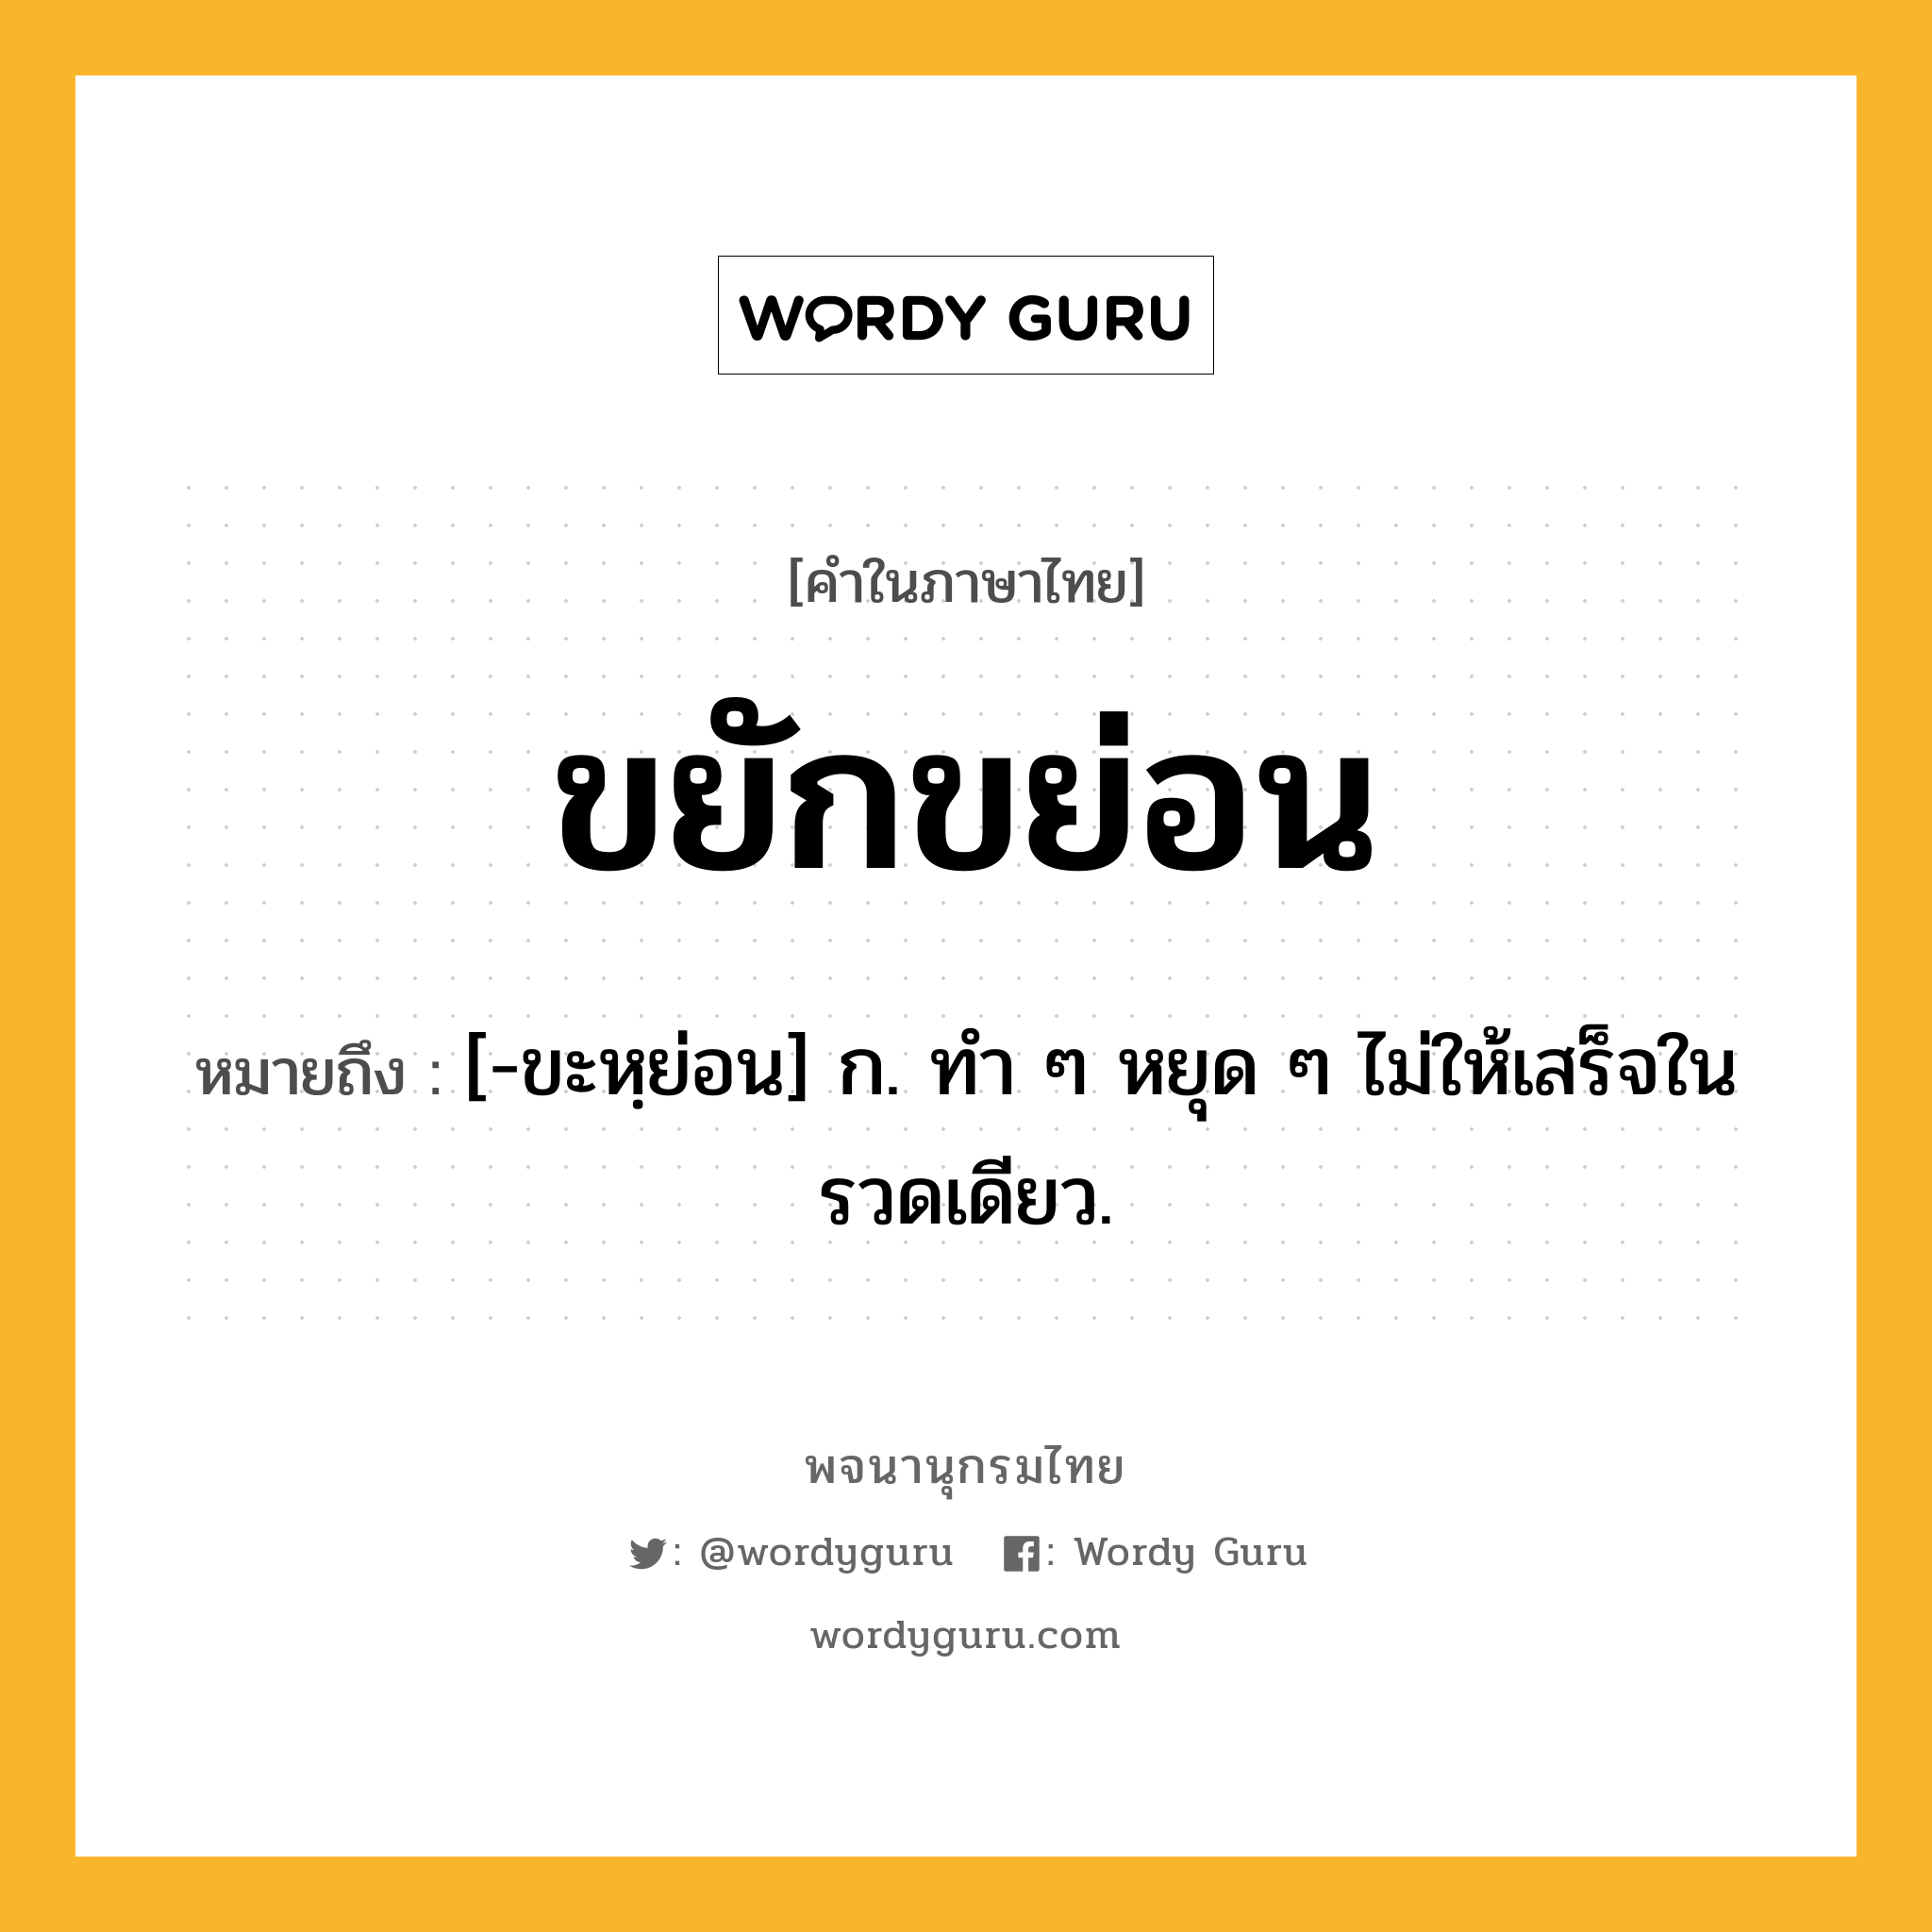 ขยักขย่อน หมายถึงอะไร?, คำในภาษาไทย ขยักขย่อน หมายถึง [-ขะหฺย่อน] ก. ทํา ๆ หยุด ๆ ไม่ให้เสร็จในรวดเดียว.